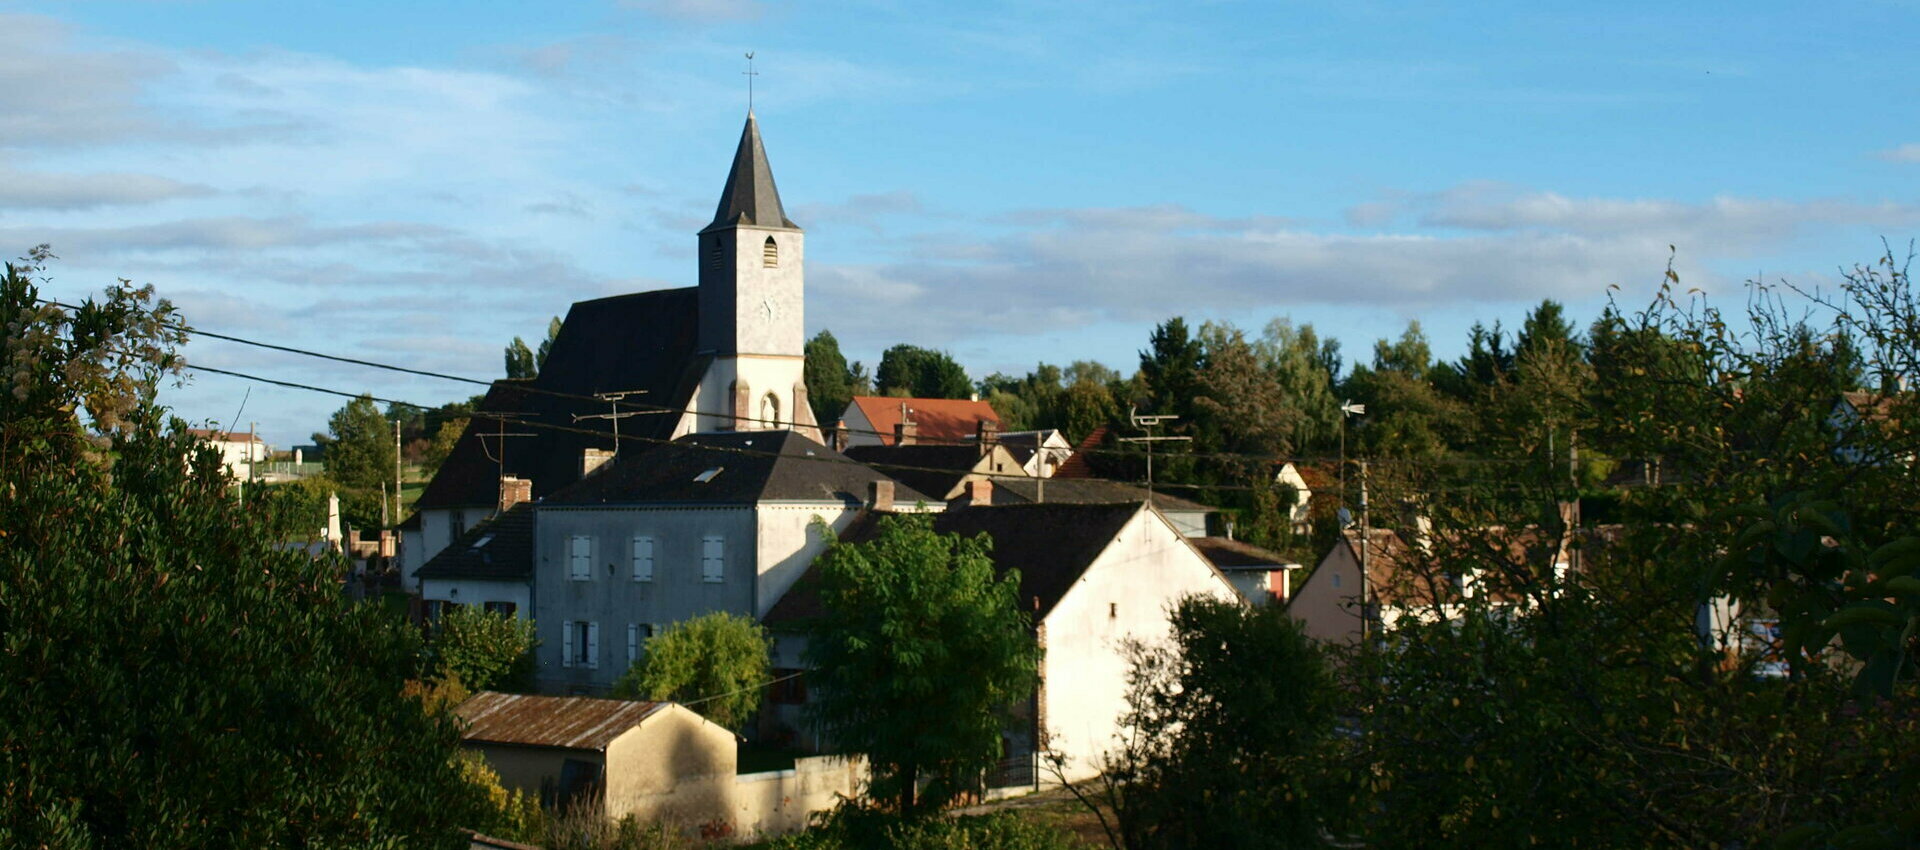 Site officiel de la commune de Saint-Firmin-des-Bois